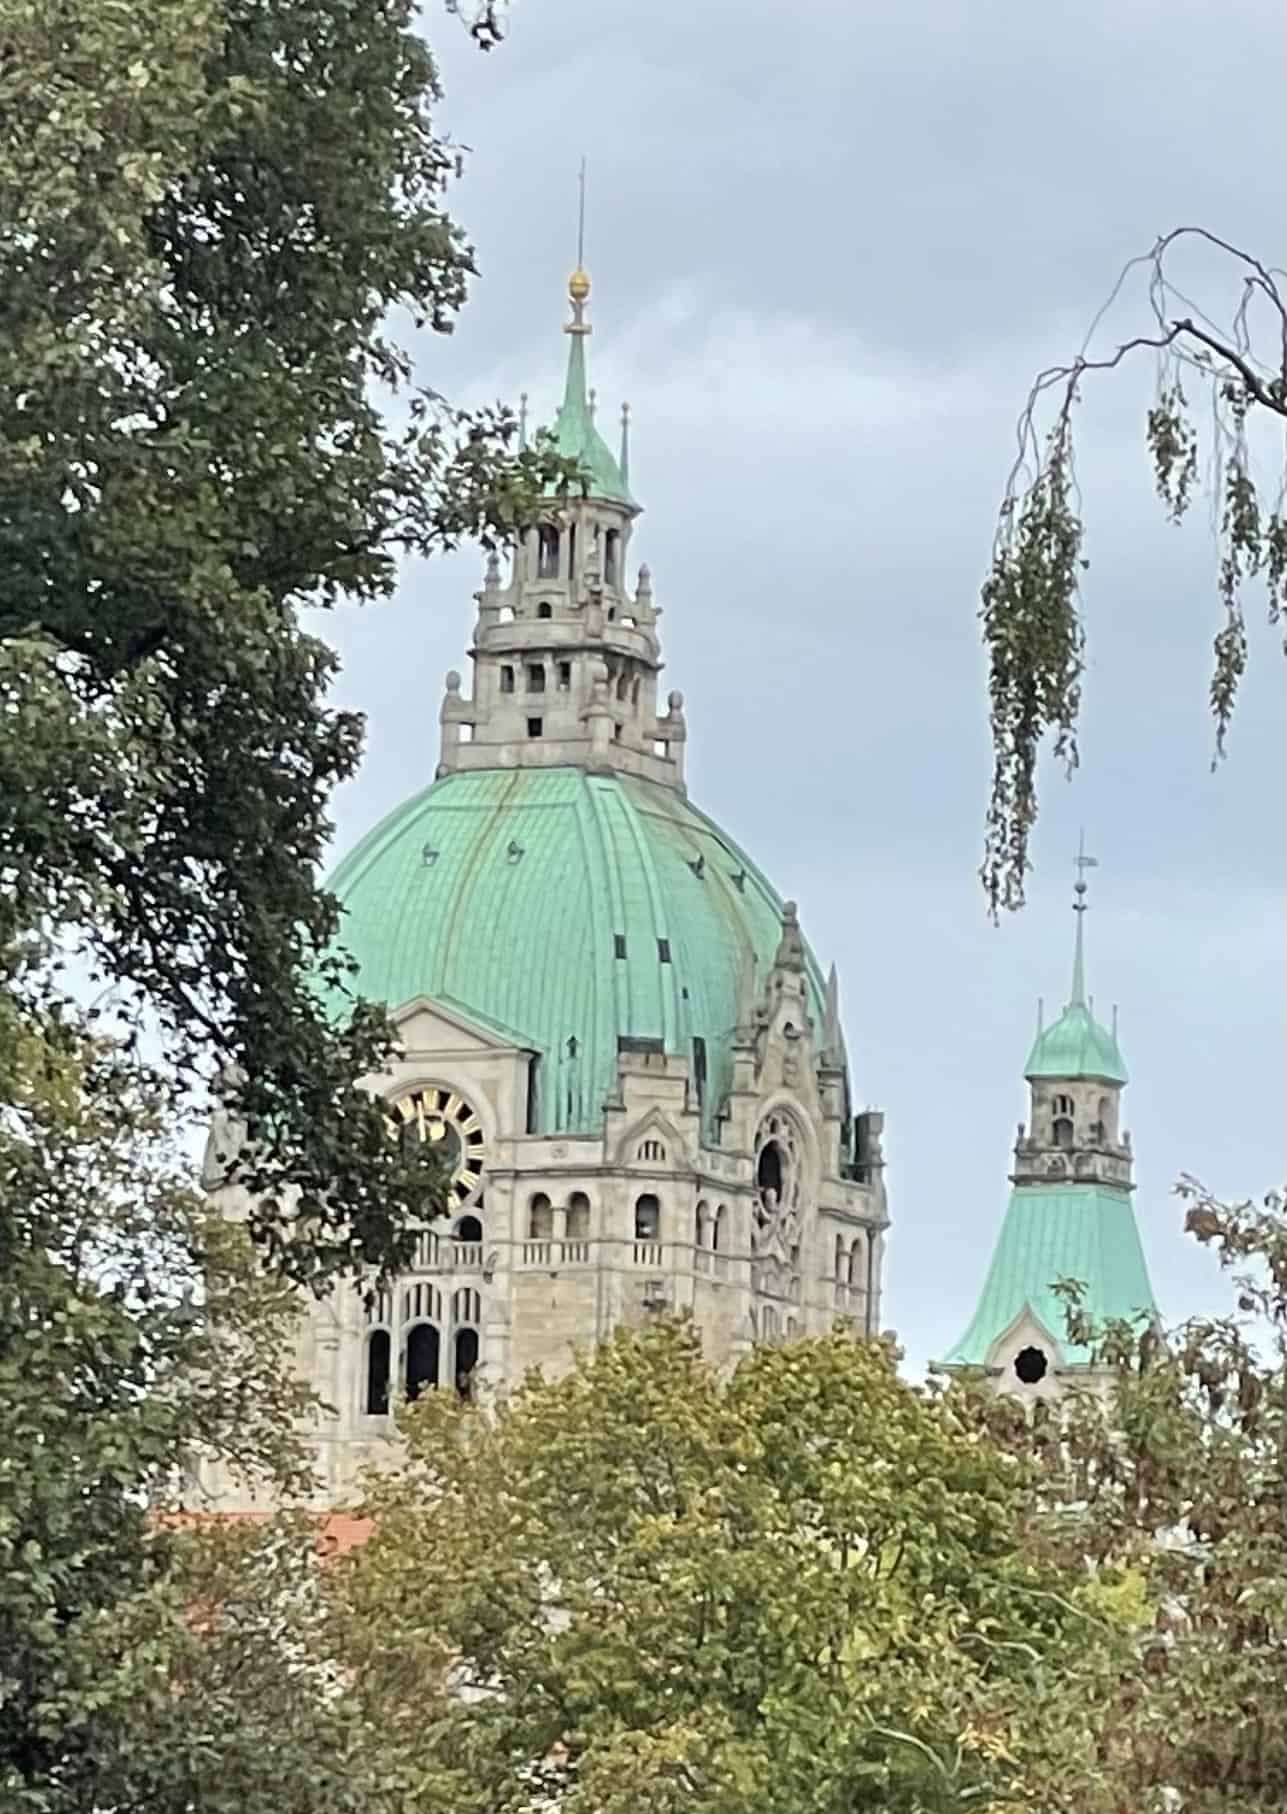 Kuppel des Neuen Rathauses in Hannover durch die Bäume gesehen.